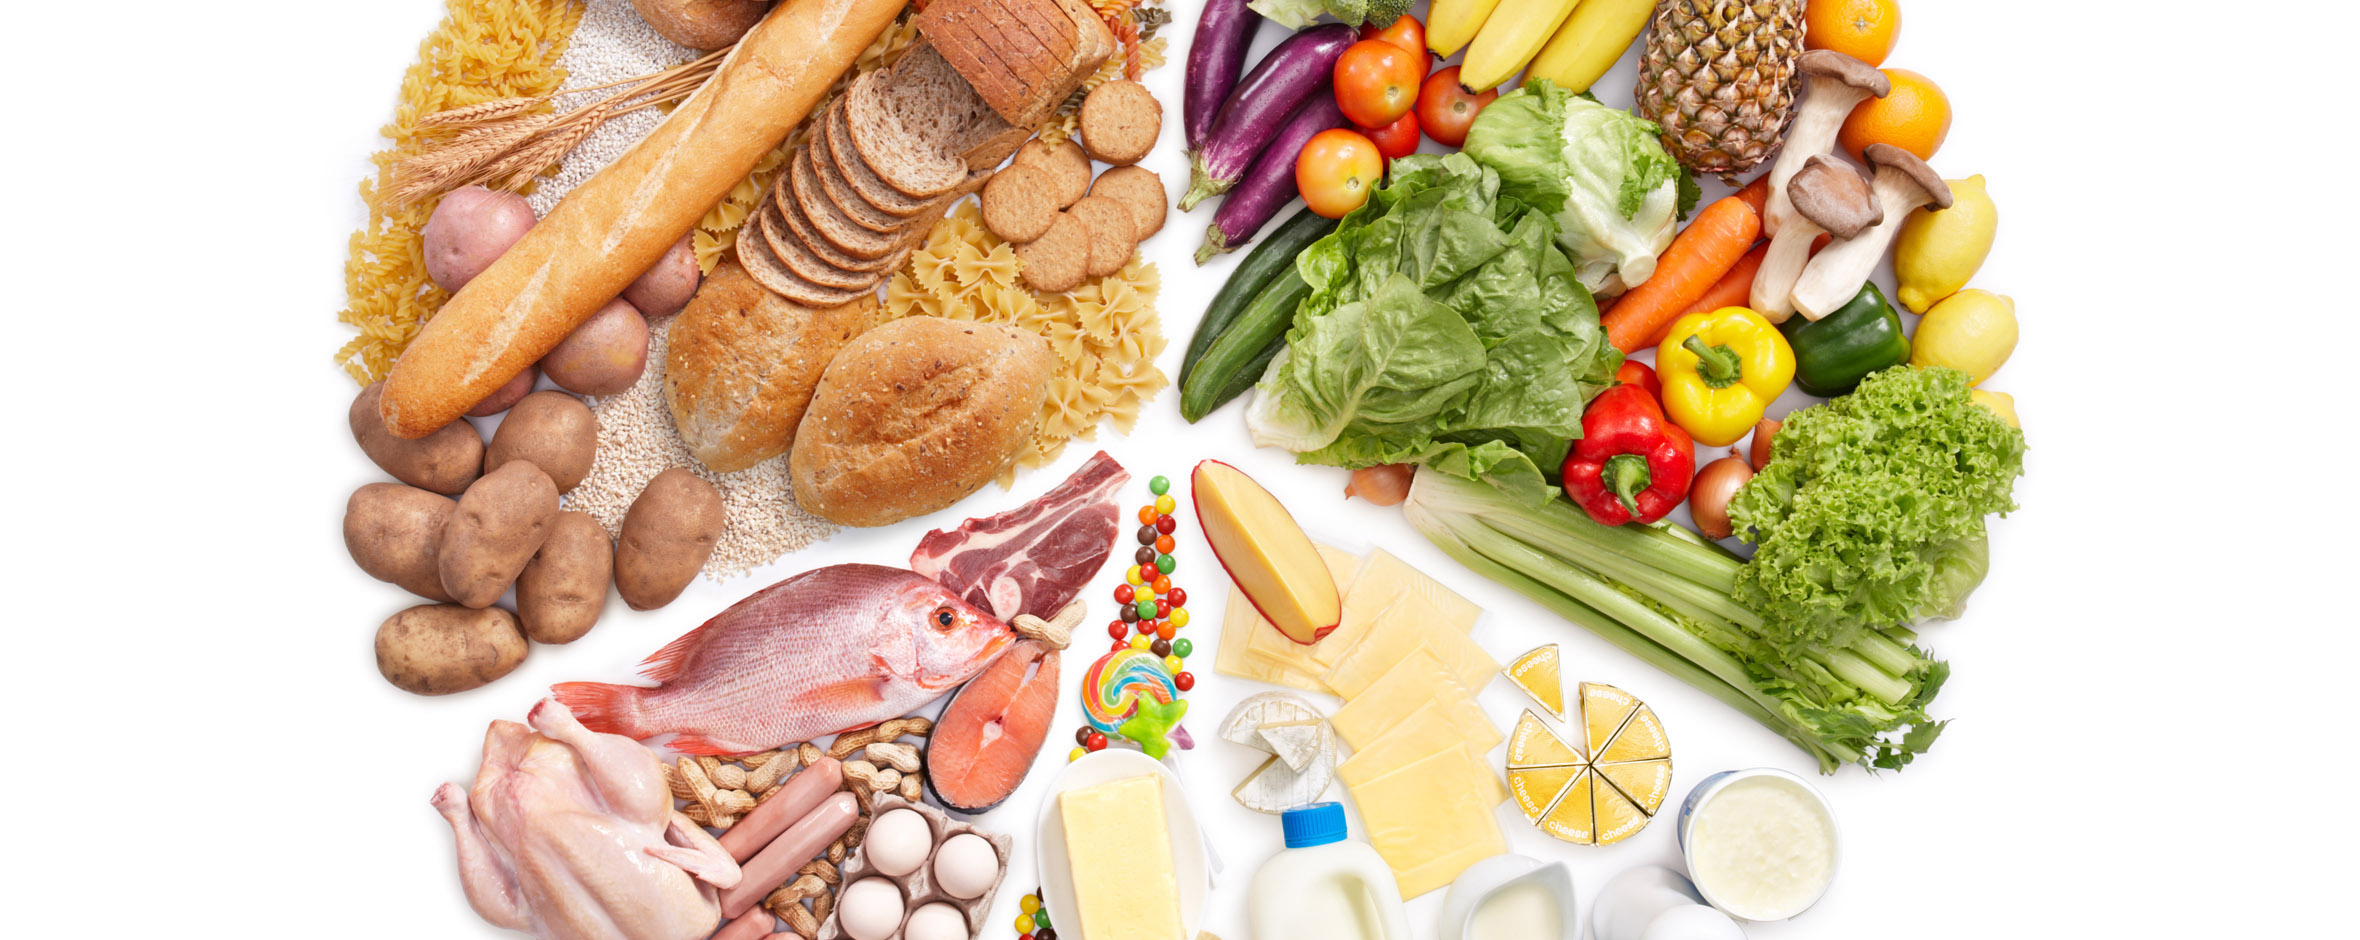 ¿Cómo tener una alimentación saludable?  Guía completa